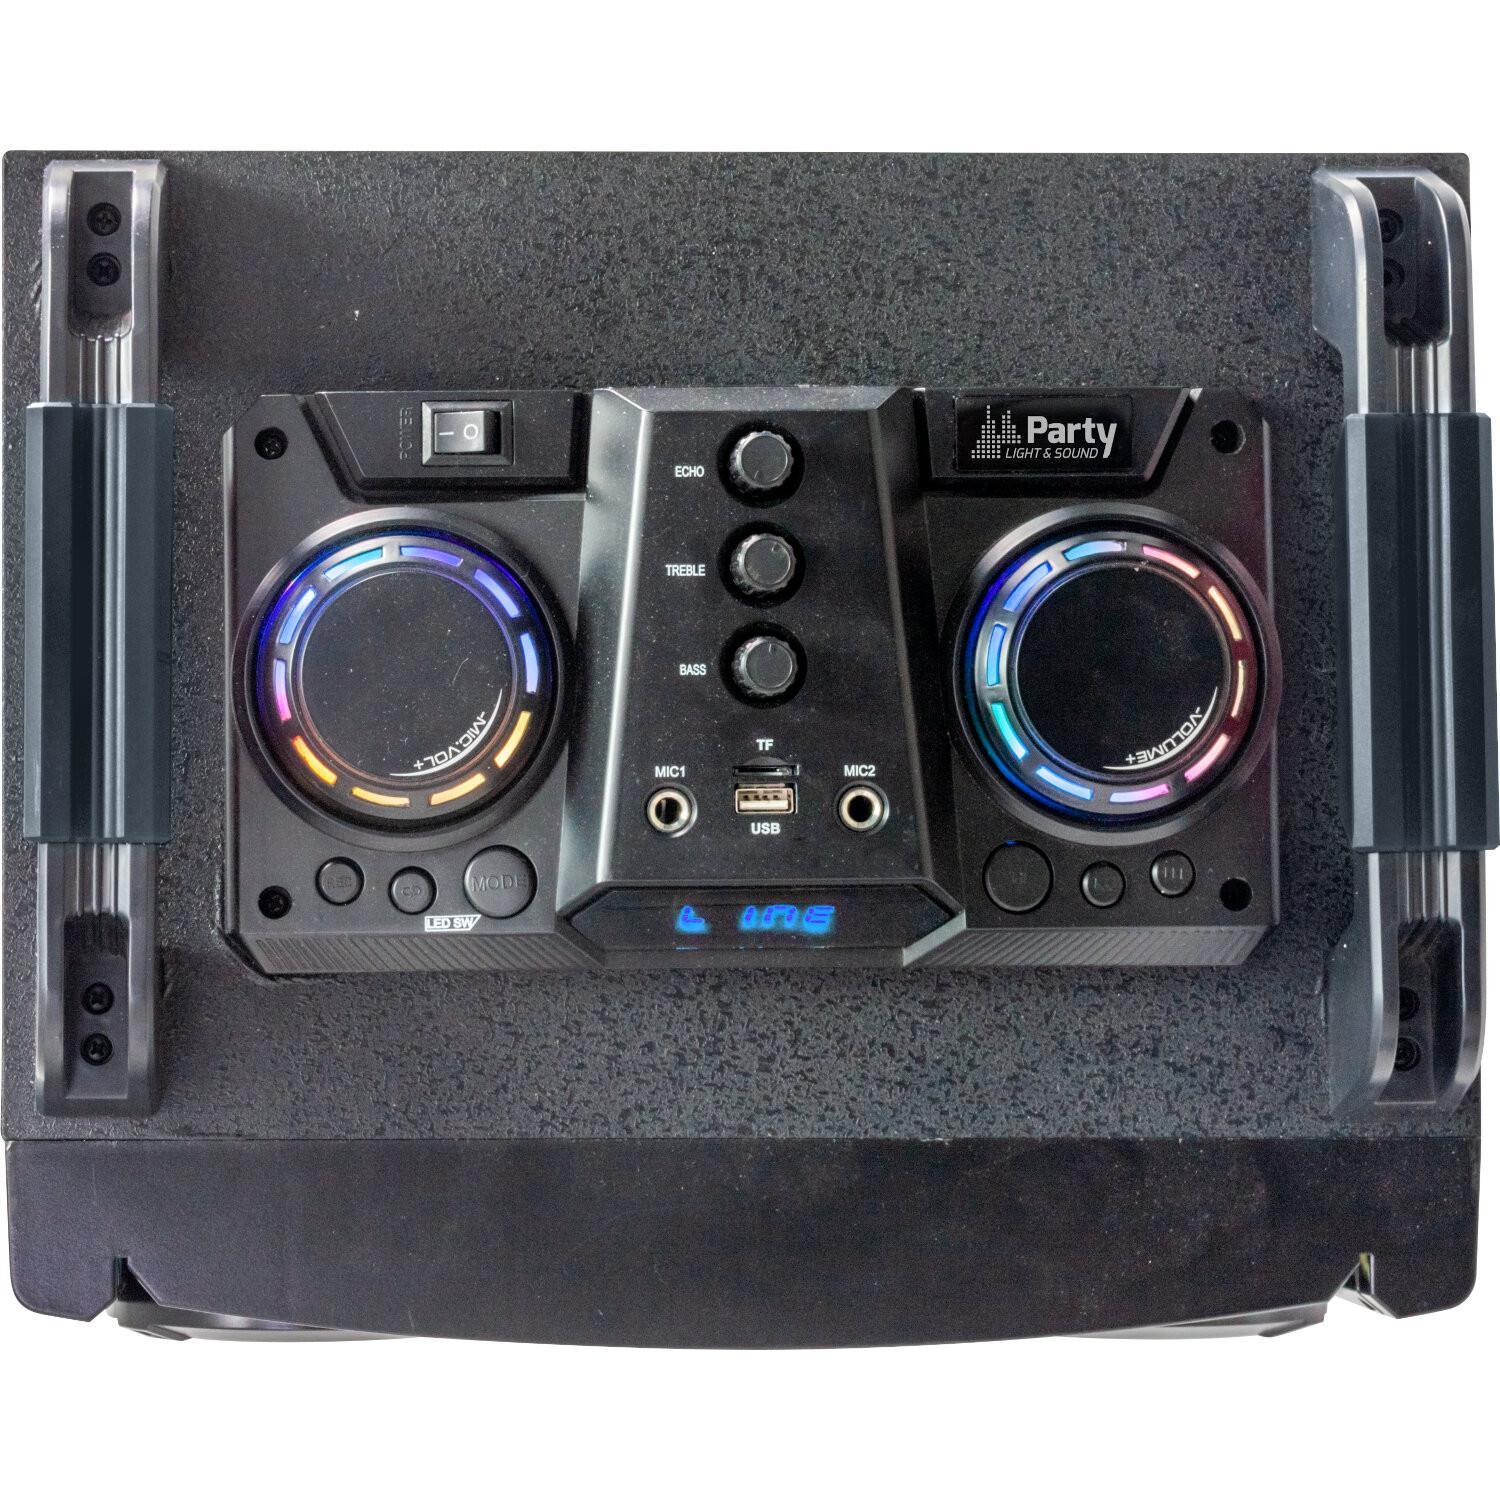 PLS Party-Box410 850w DJ Sound System with Bluetooth - DY Pro Audio